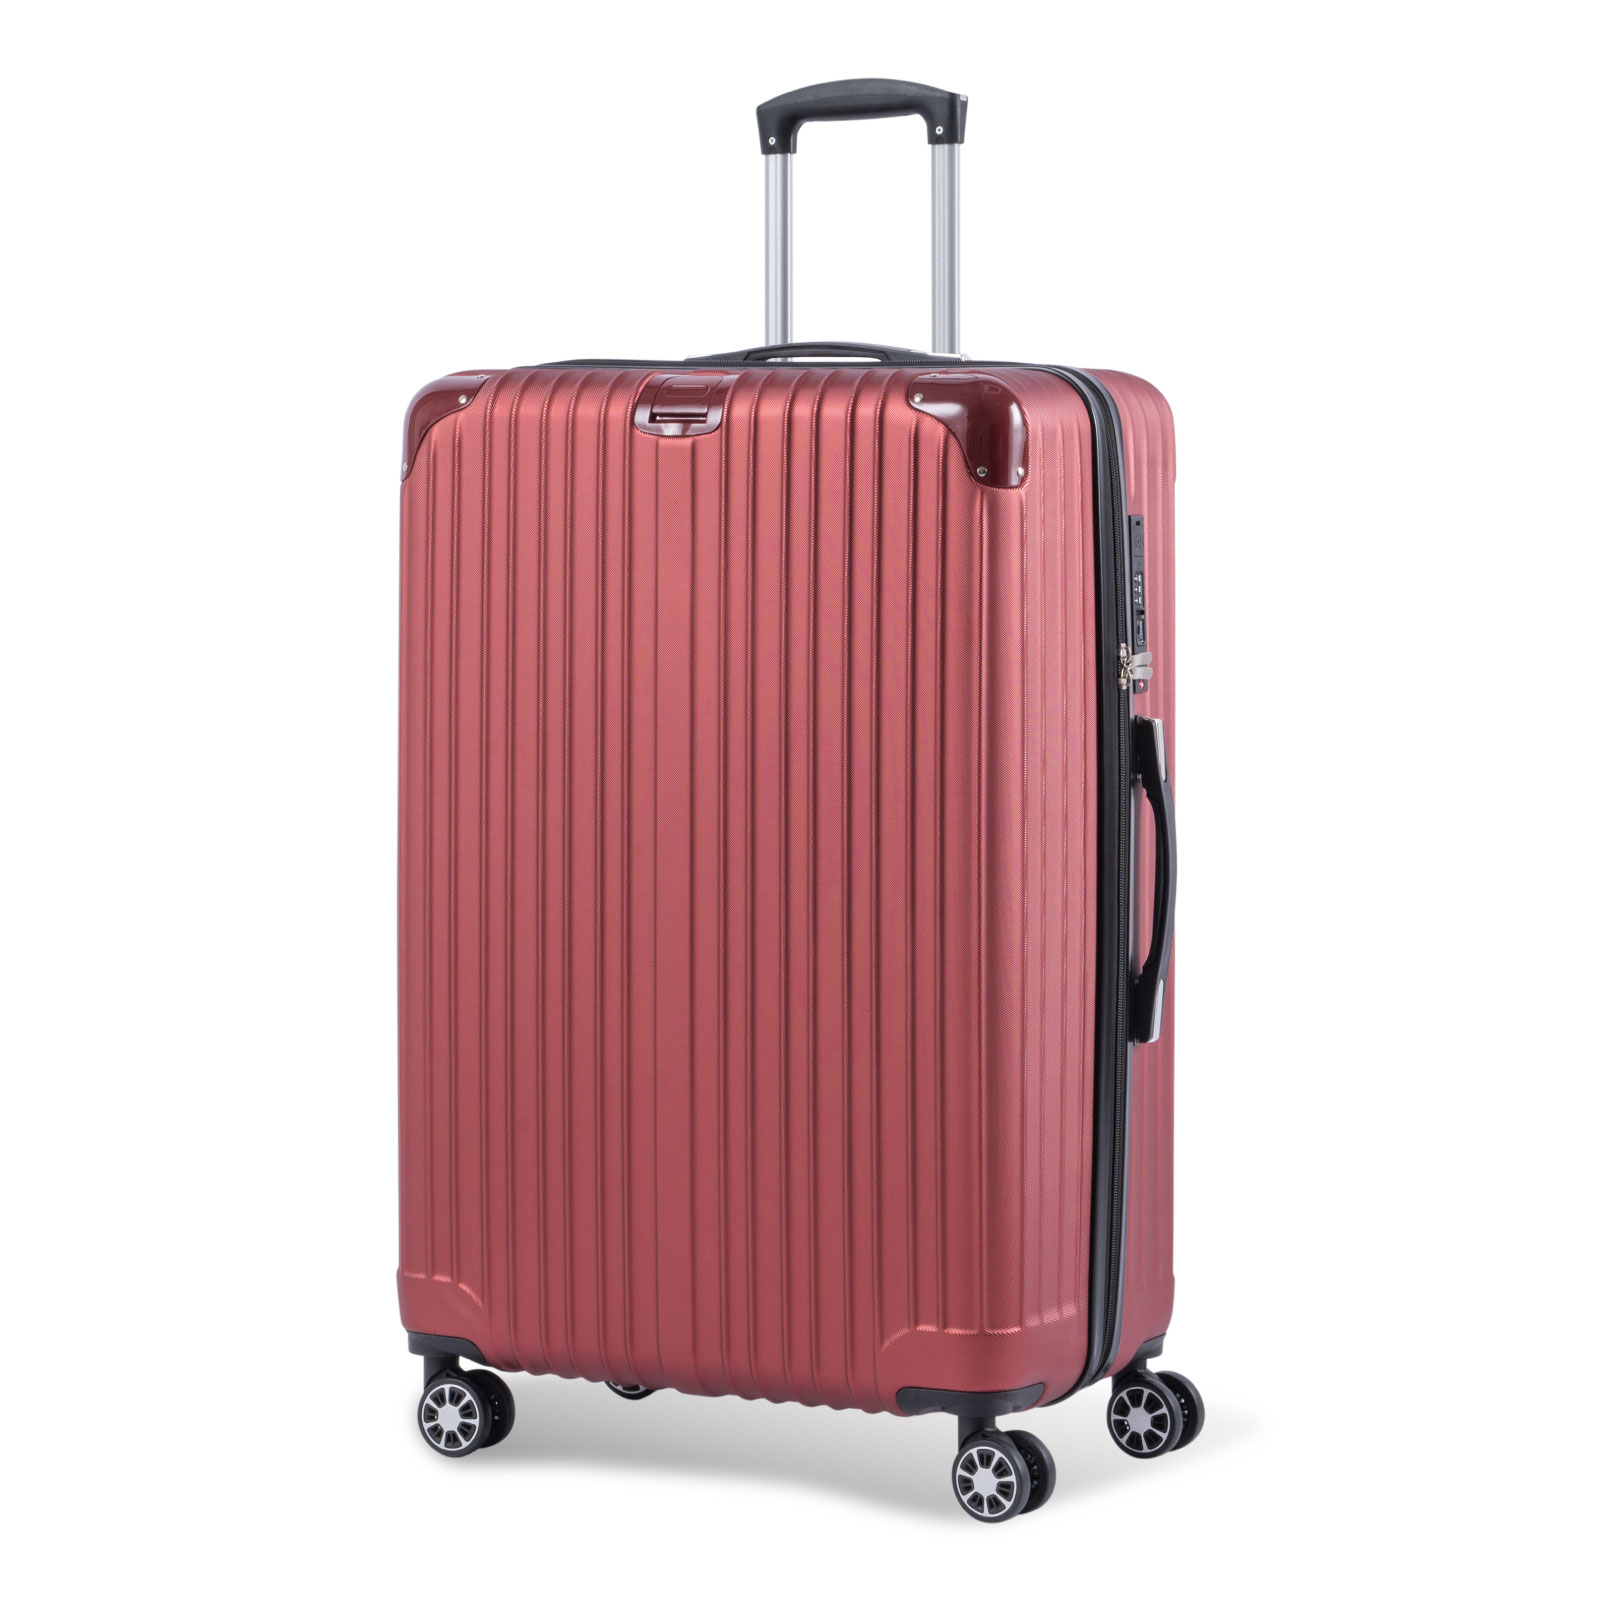 スーツケース キャリーバッグ キャリーケース 大容量 Lサイズ 軽量 静音 大型 ダブルキャスター 360度回転 TSAローク搭載 ファスナー式  ビジネス 出張 旅行